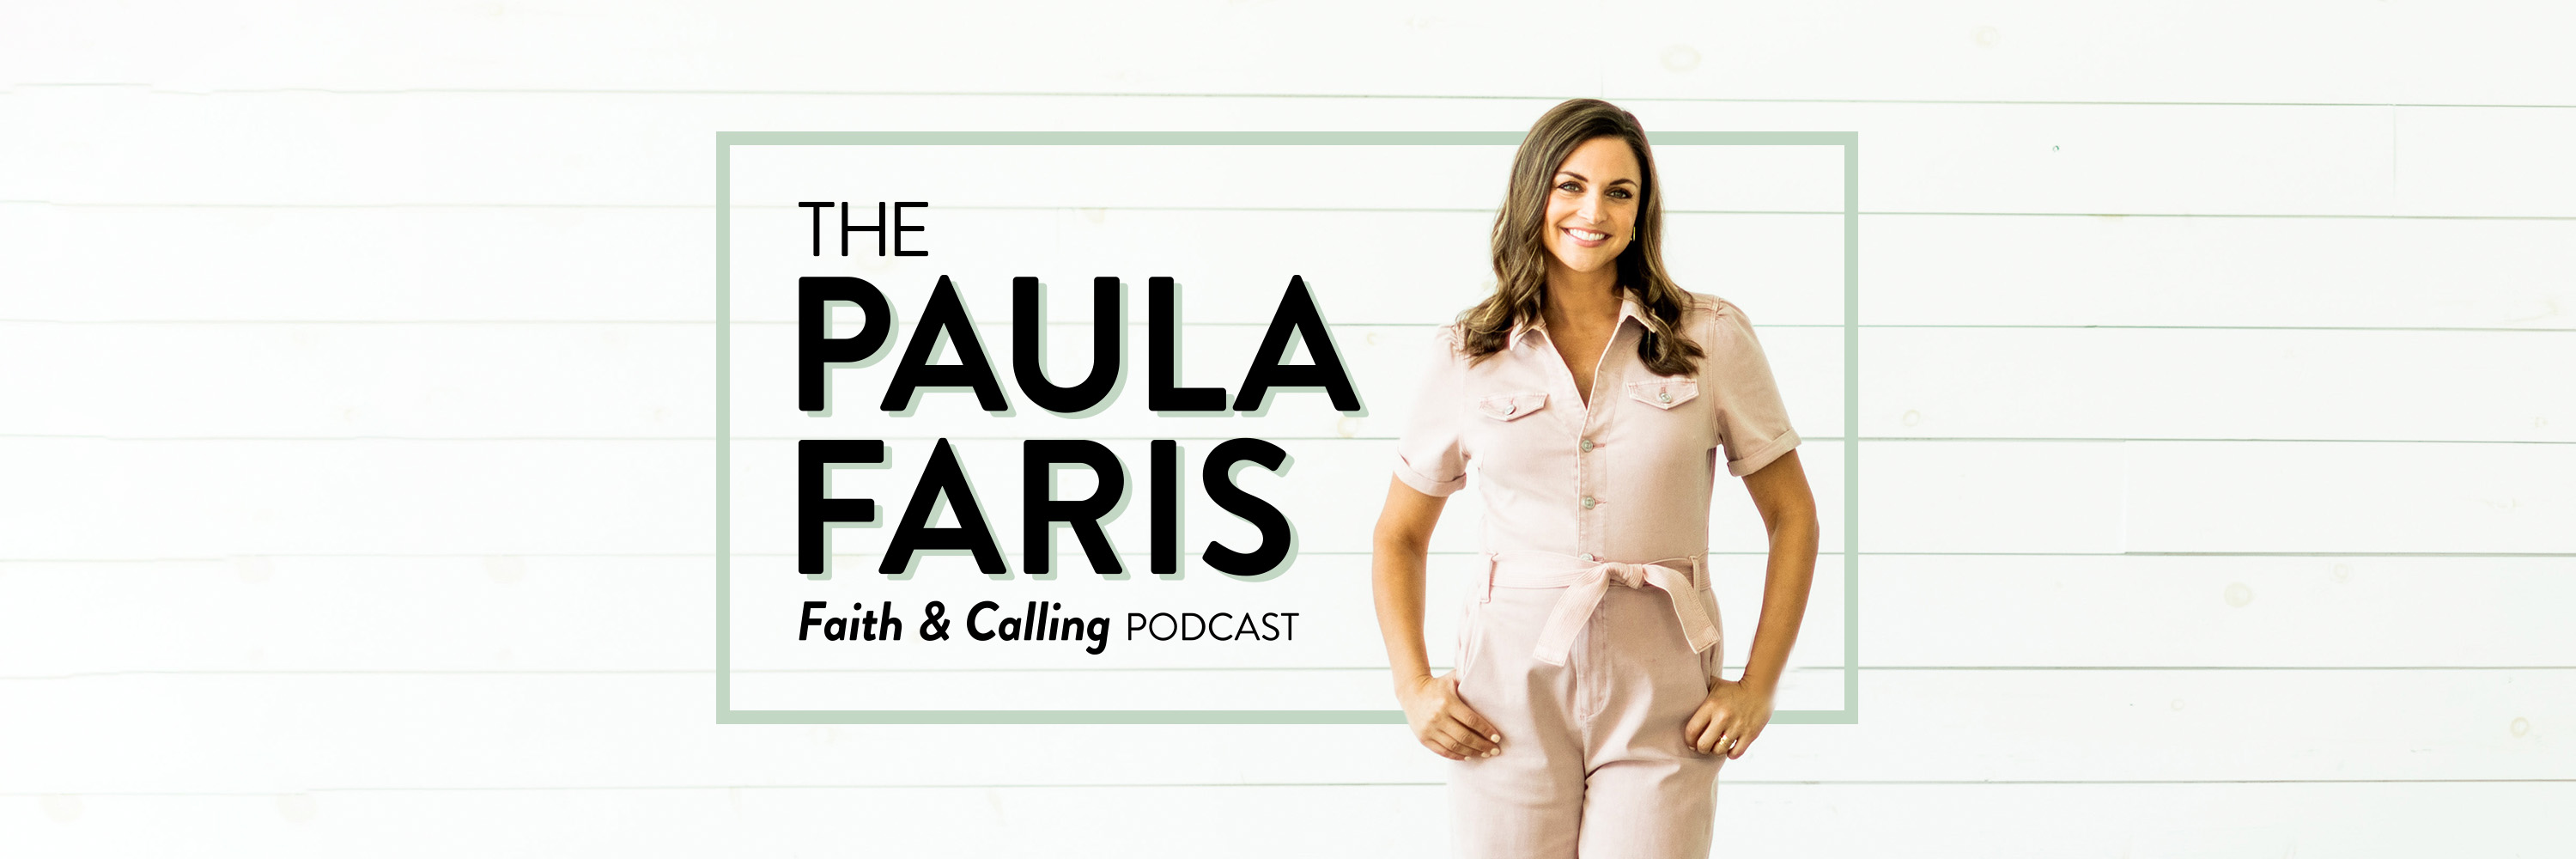 New Paula Faris Episode: Featuring Katherine Schwarzenegger Pratt